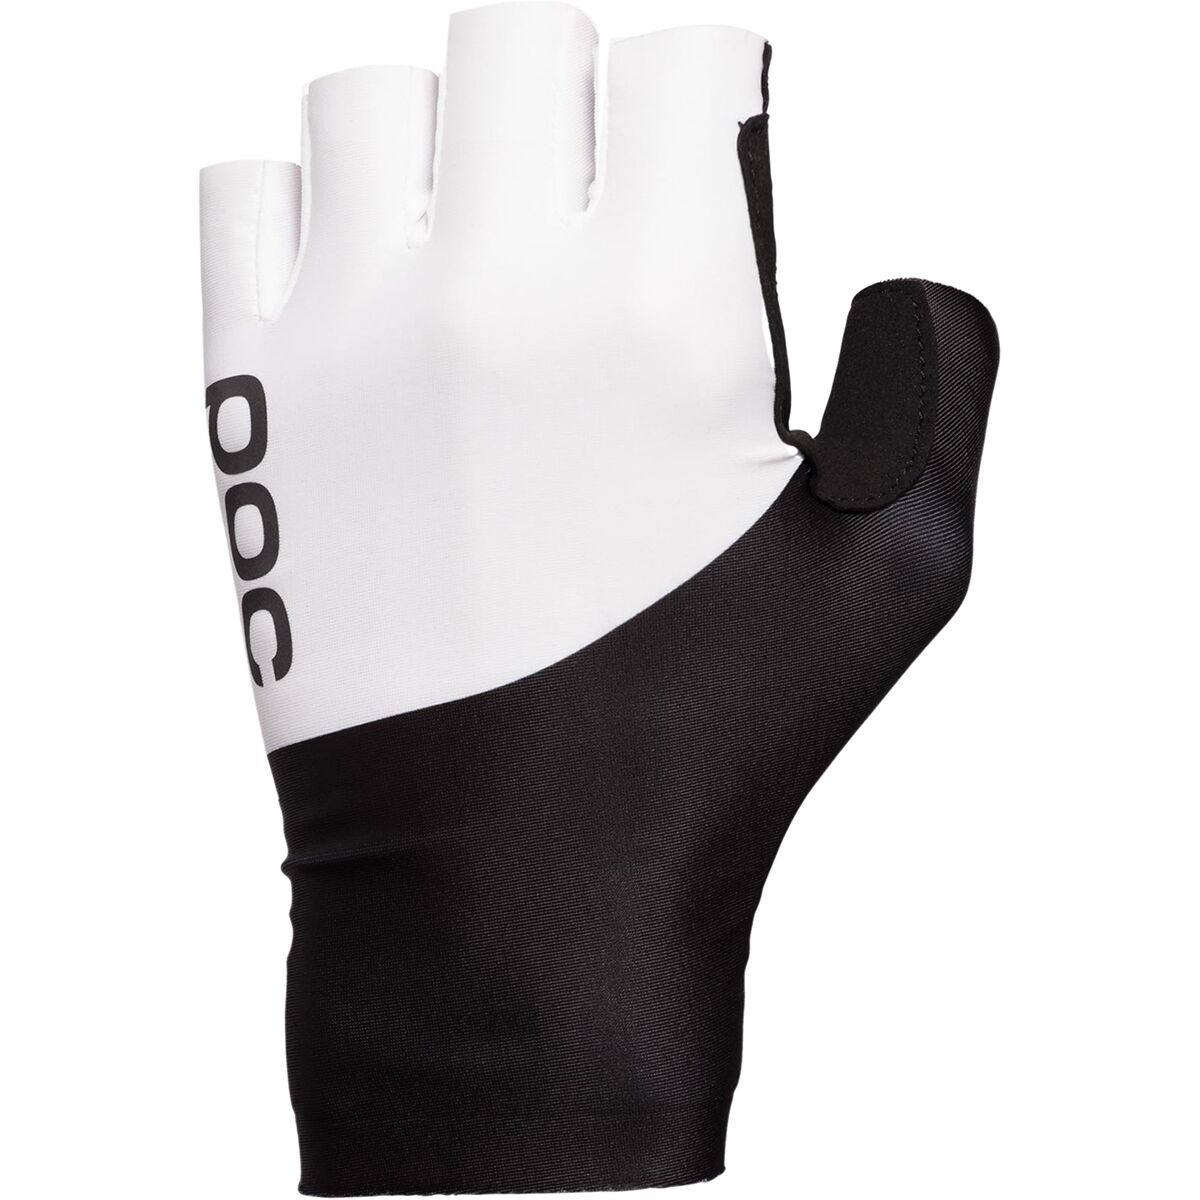 POC Raceday Aero Glove - Men's